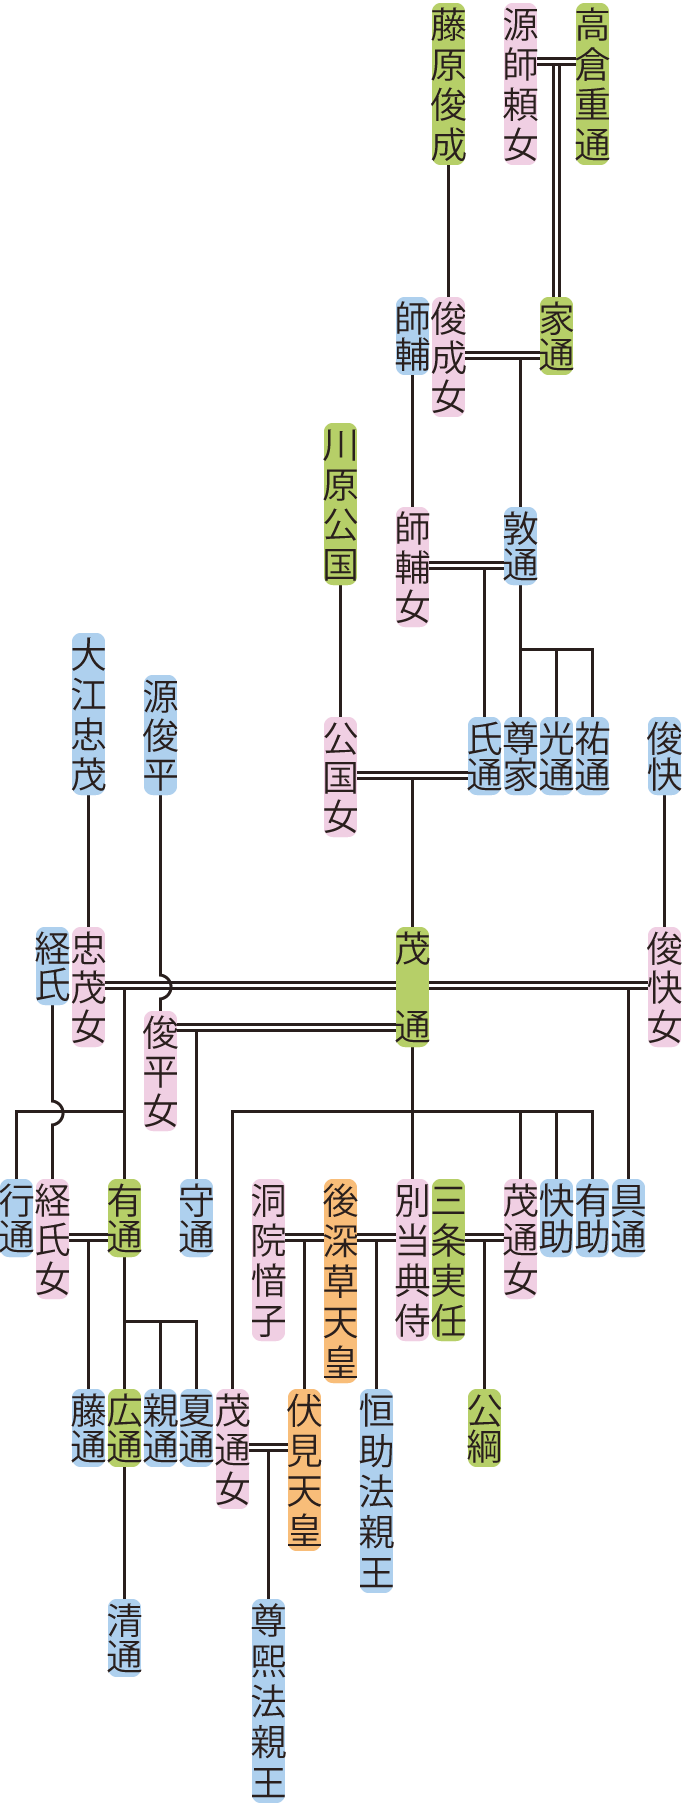 高倉敦通の系図